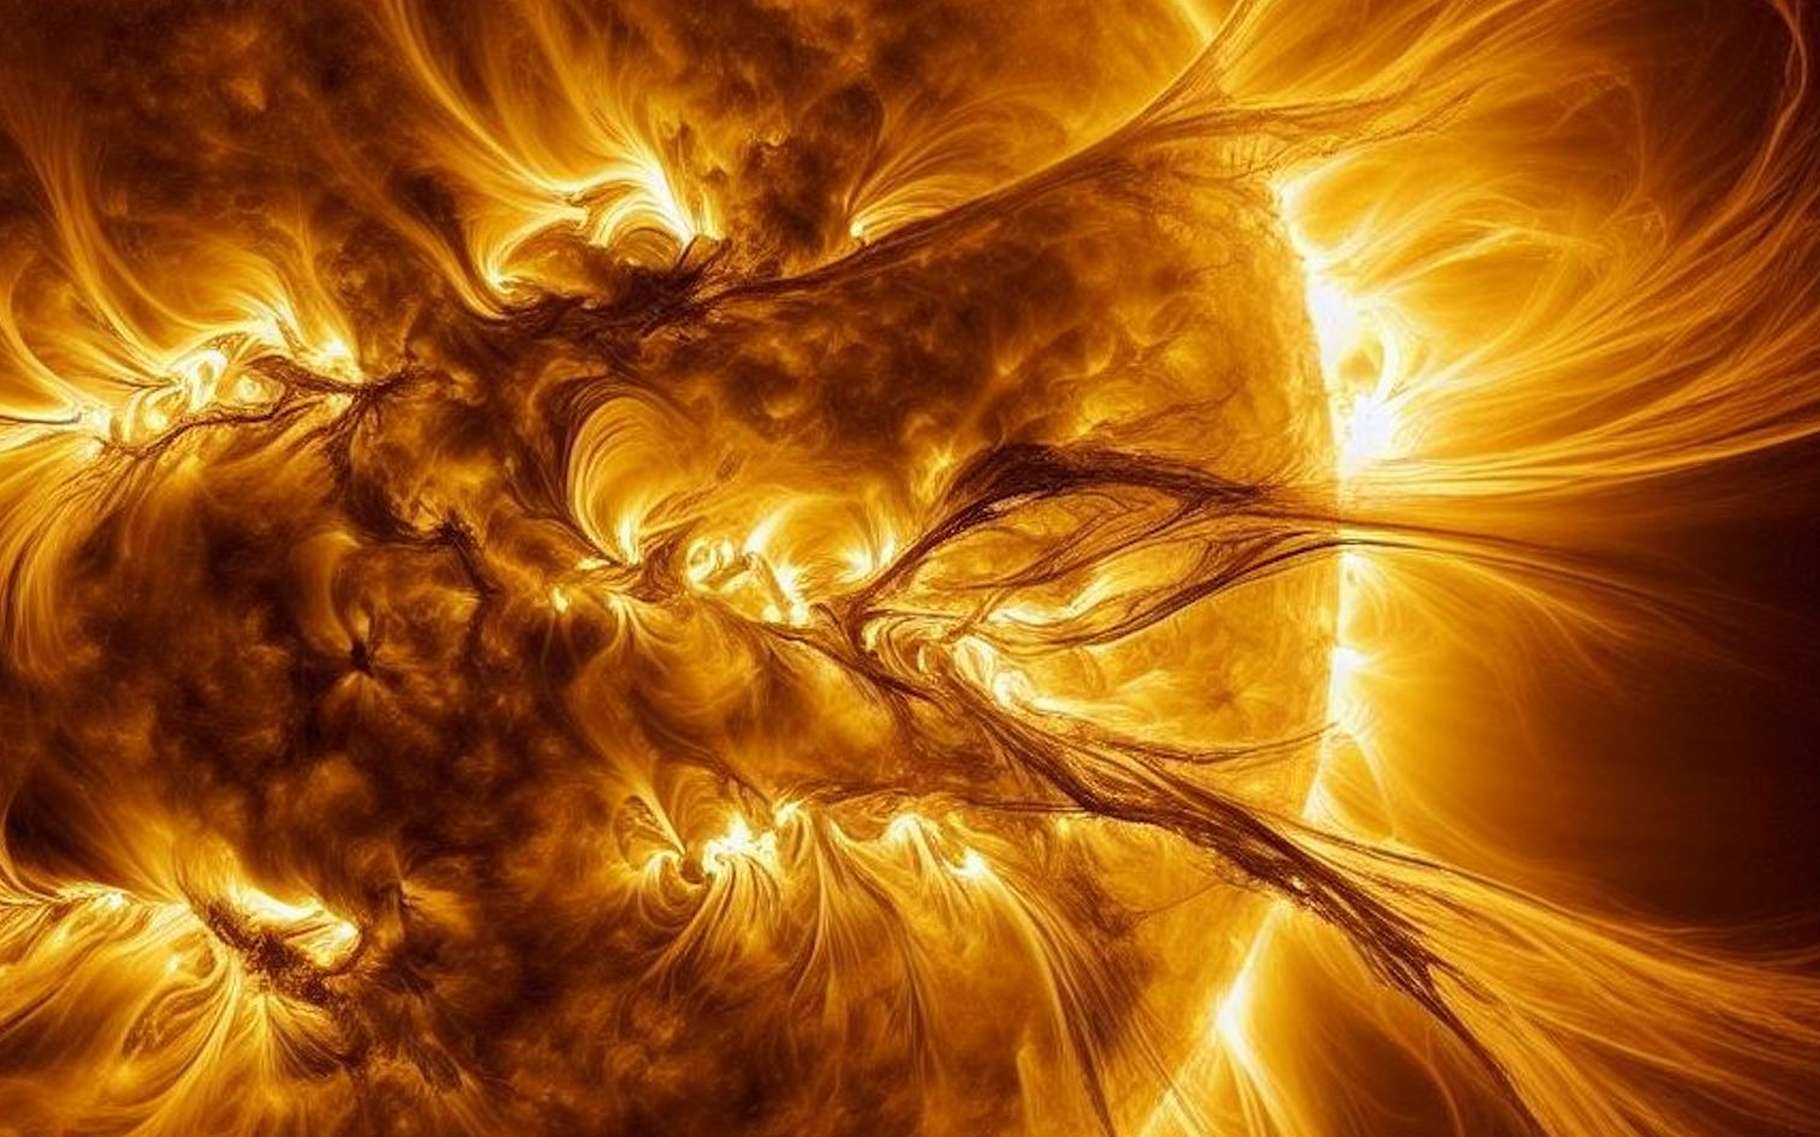 Le pic d'activité du Soleil va arriver plus tôt que prévu et s'annonce explosif, selon les experts